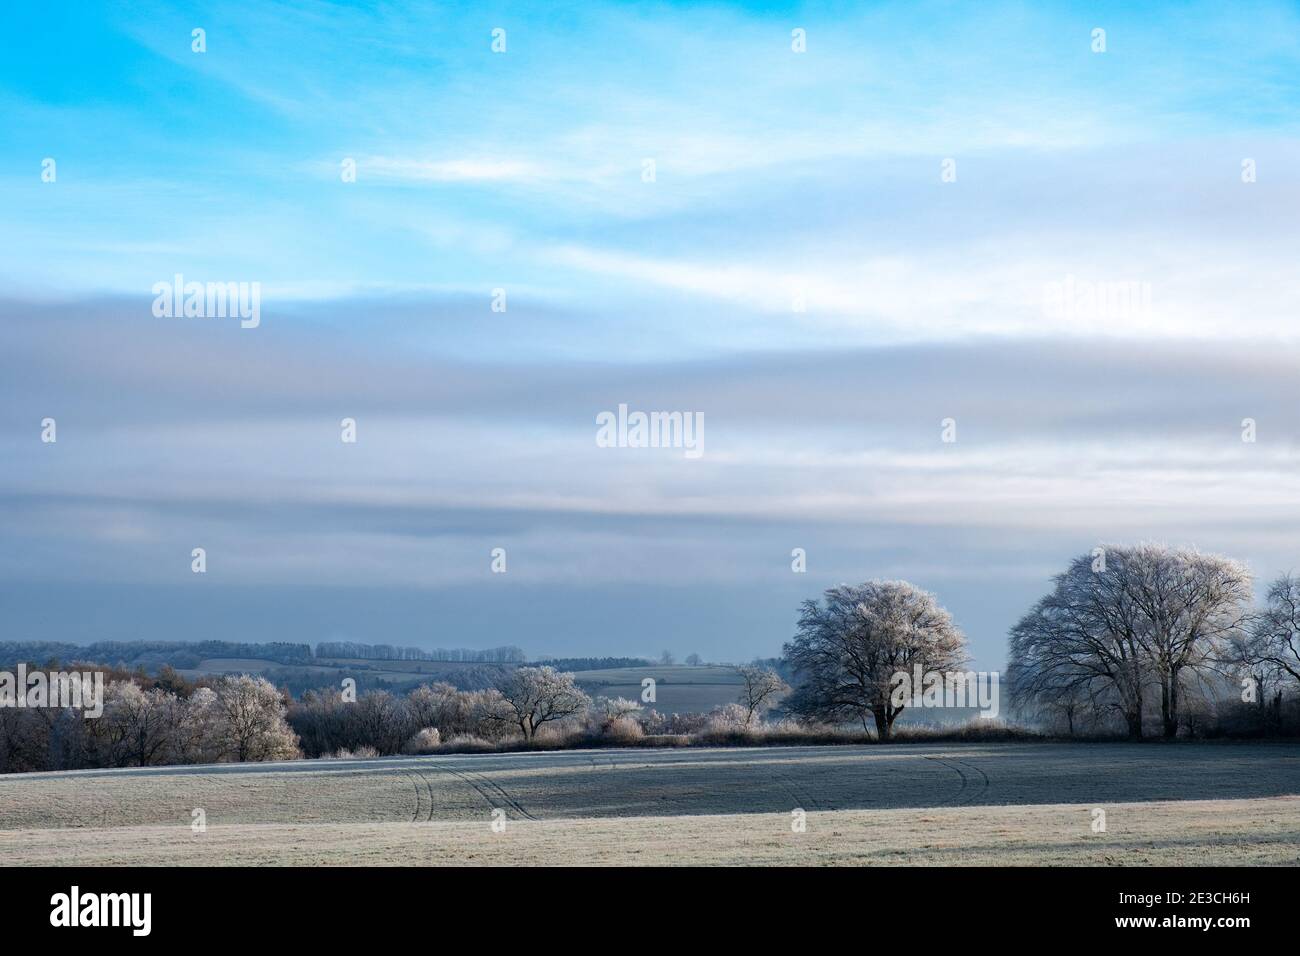 Frostige Bäume in der britischen Landschaft Stockfoto